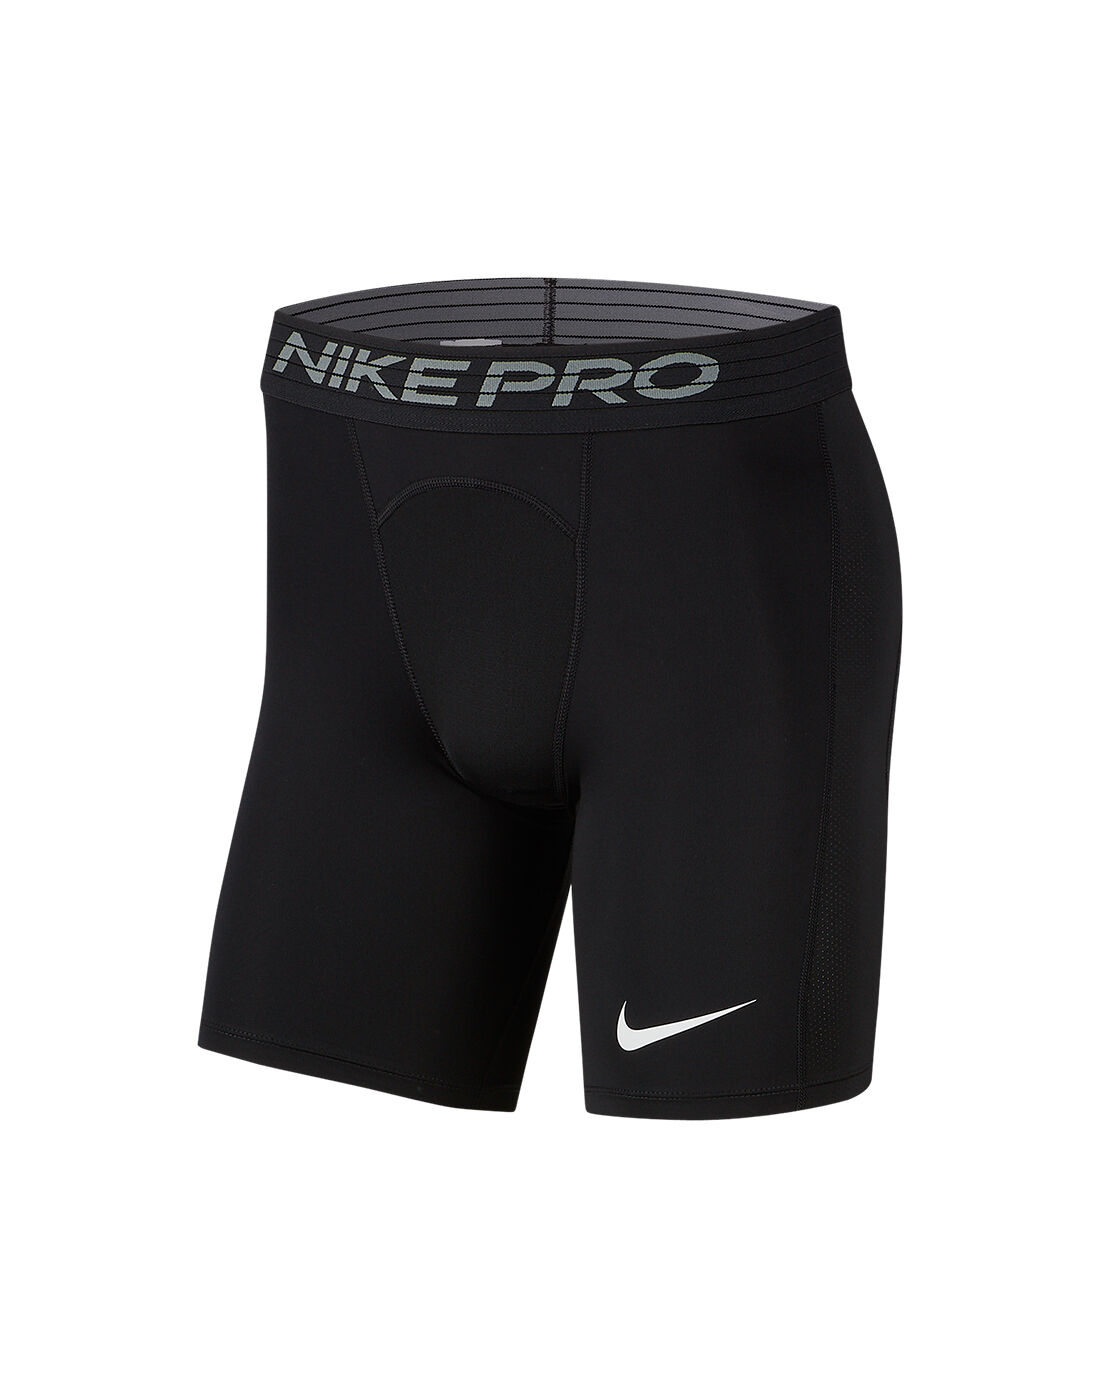 nike pro 7 inch shorts